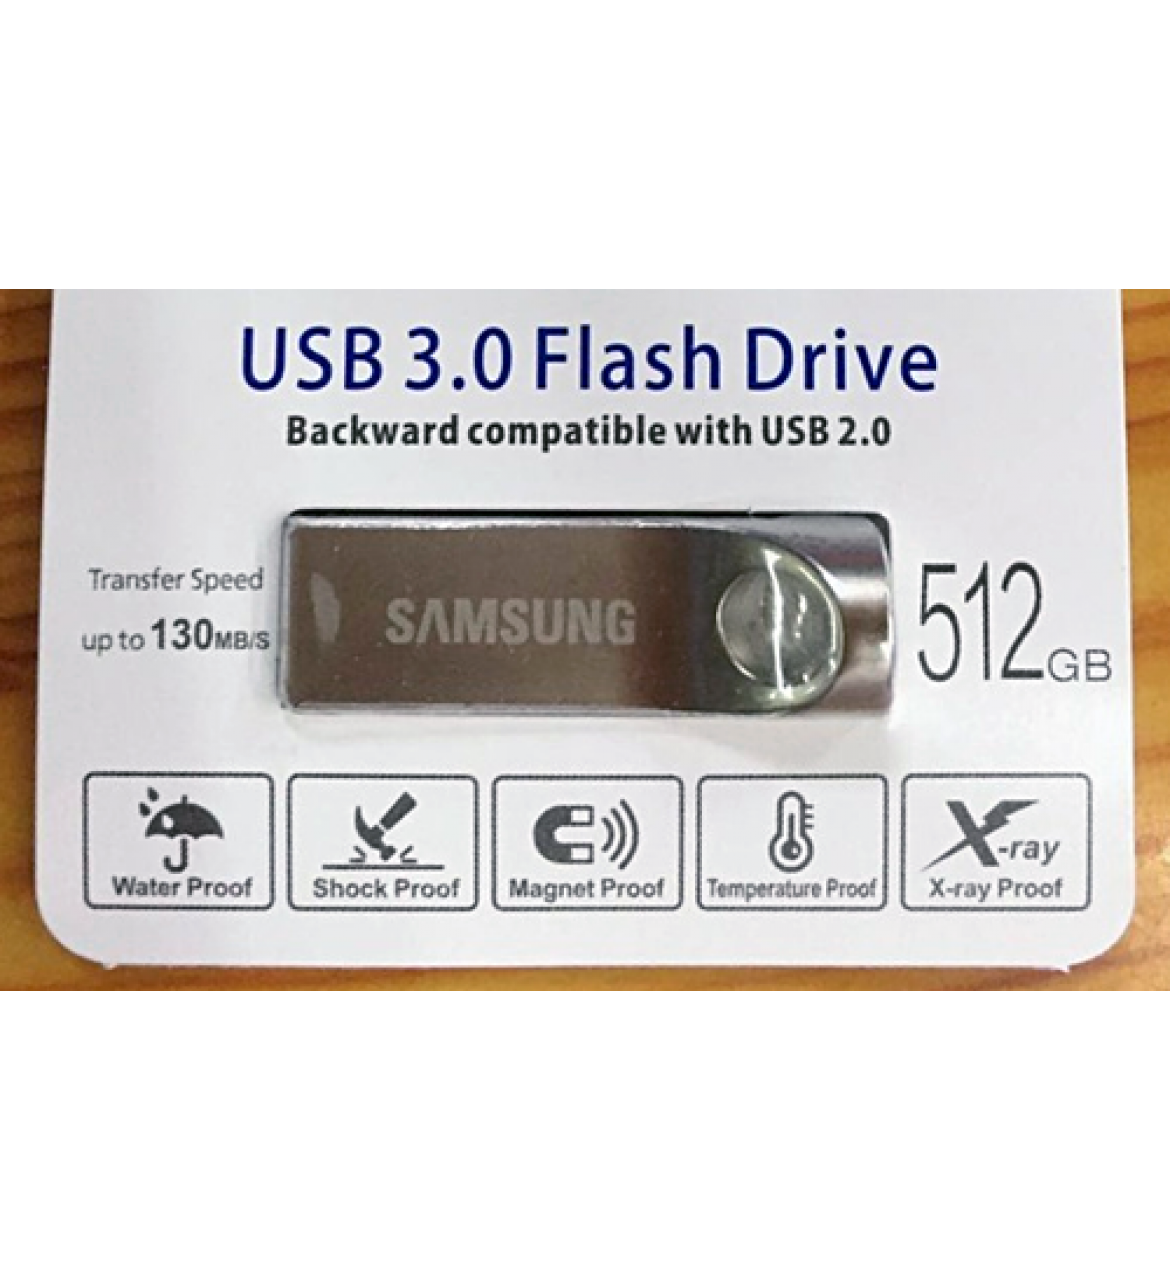 Chiêu lừa mua USB 512GB với giá 250.000 đồng